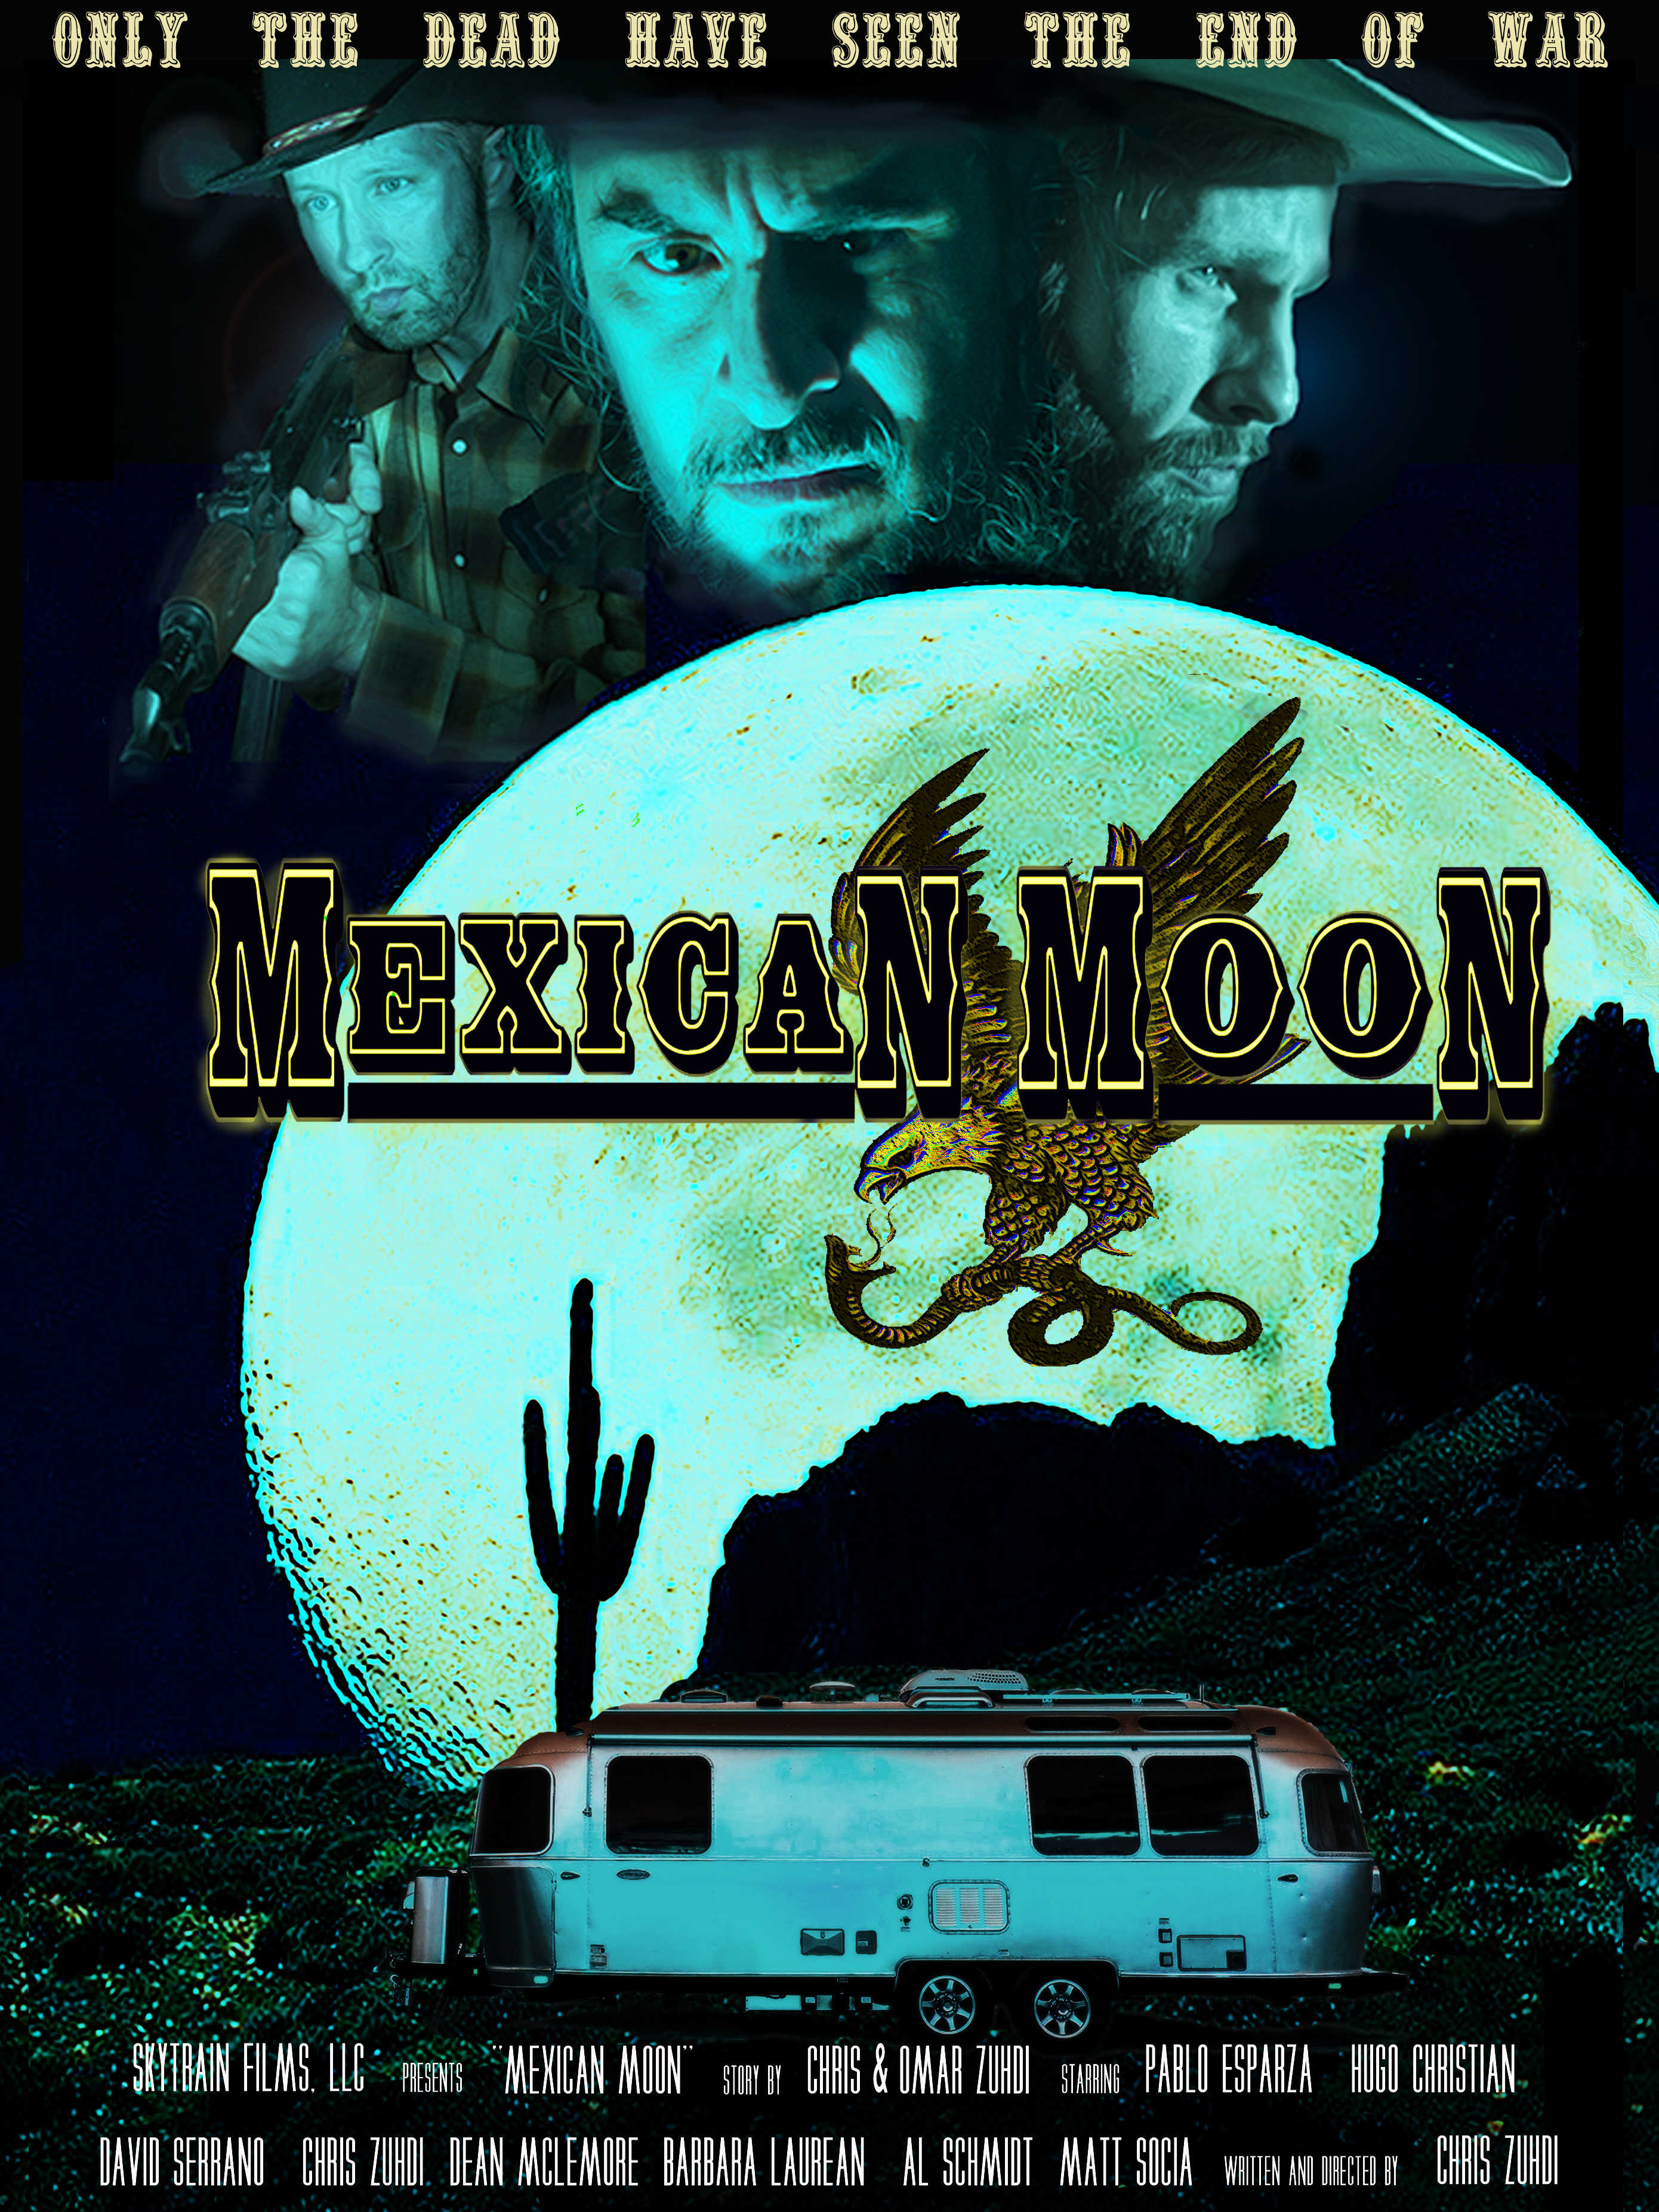 Nonton film Mexican Moon layarkaca21 indoxx1 ganool online streaming terbaru